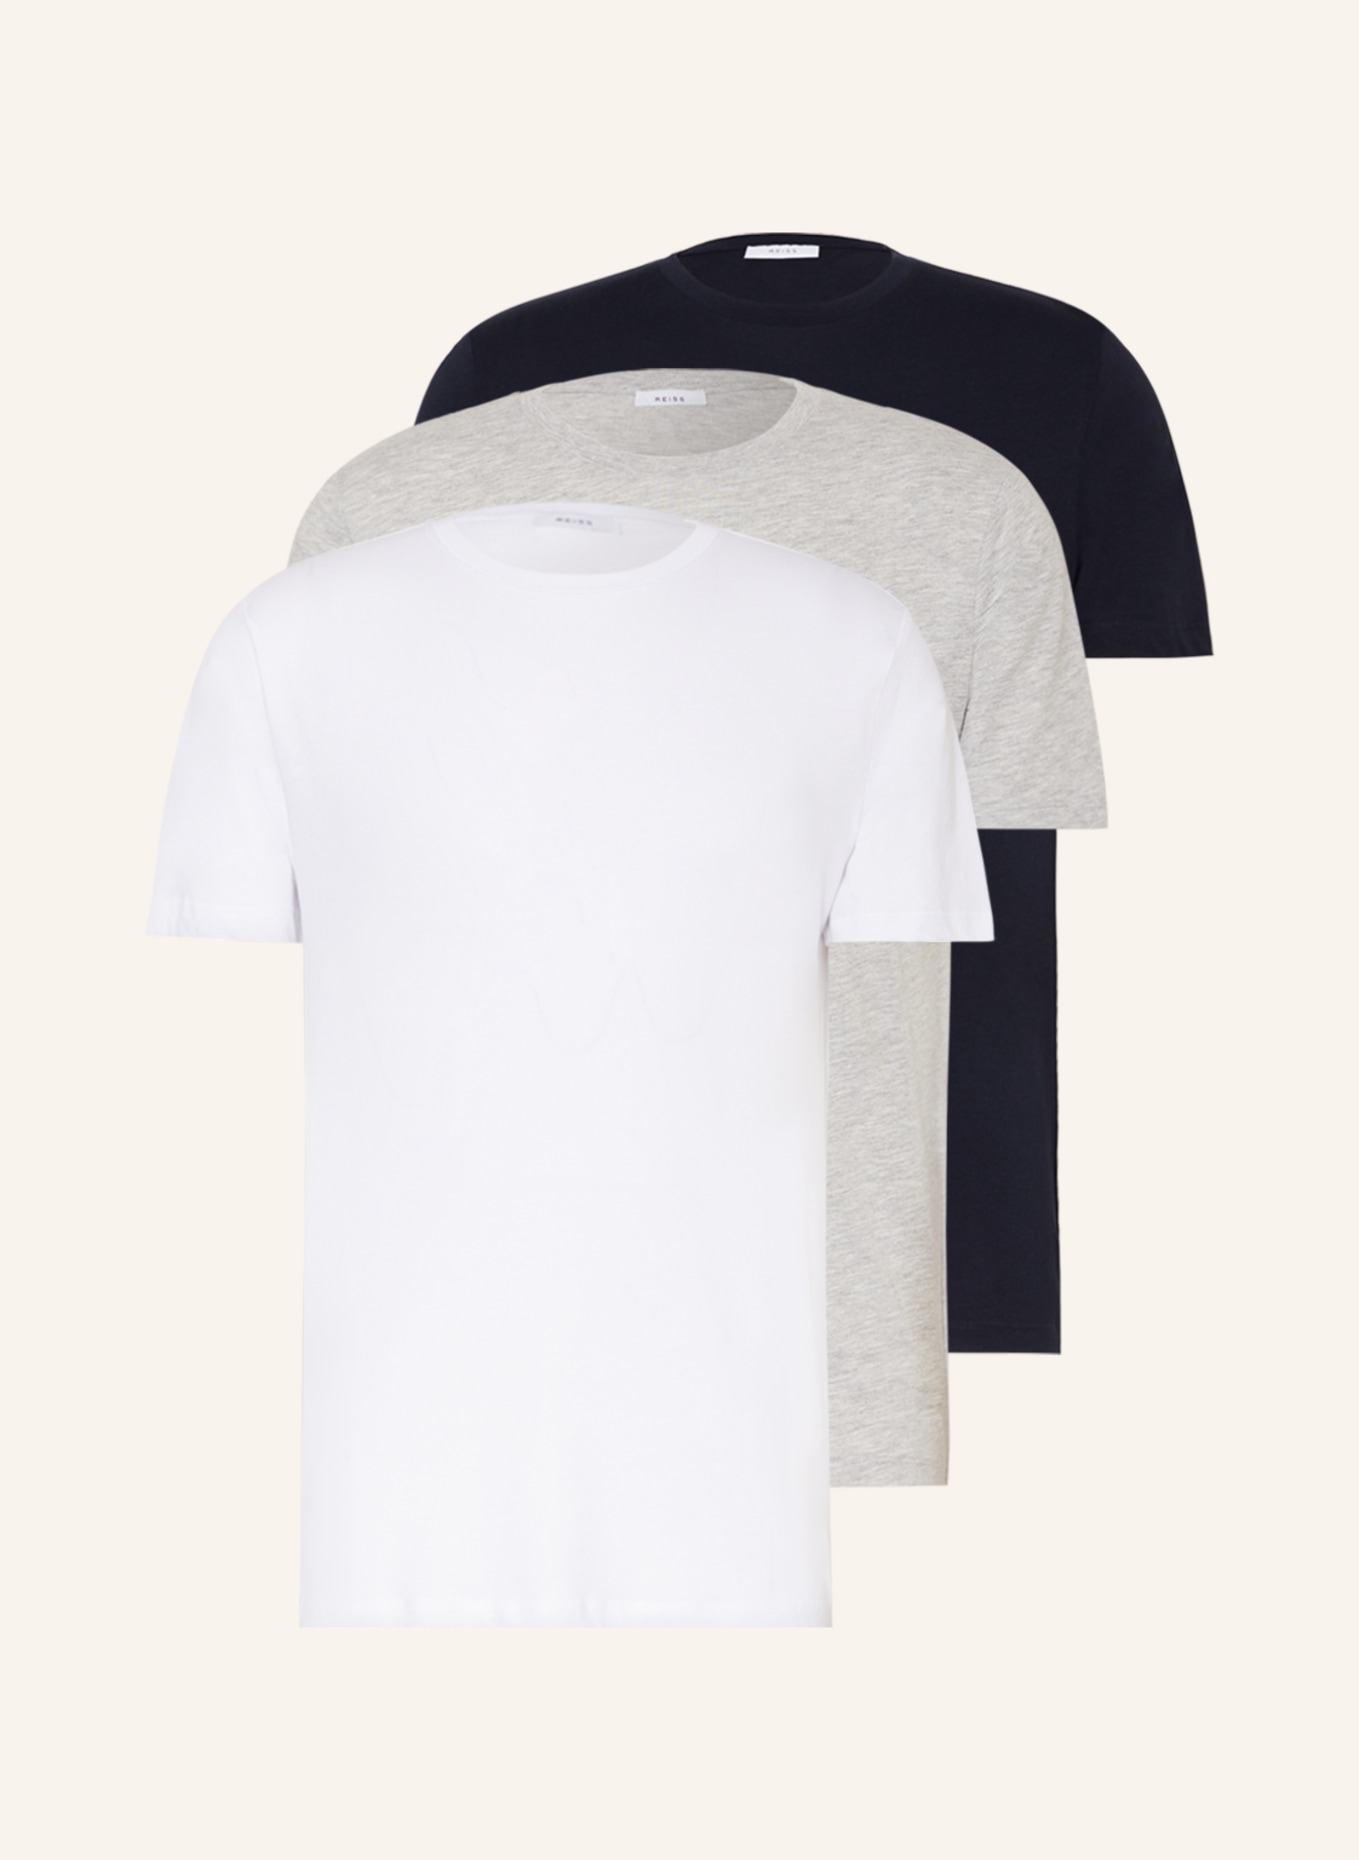 REISS 3er-Pack T-Shirts BLESS, Farbe: DUNKELBLAU/ GRAU/ WEISS (Bild 1)